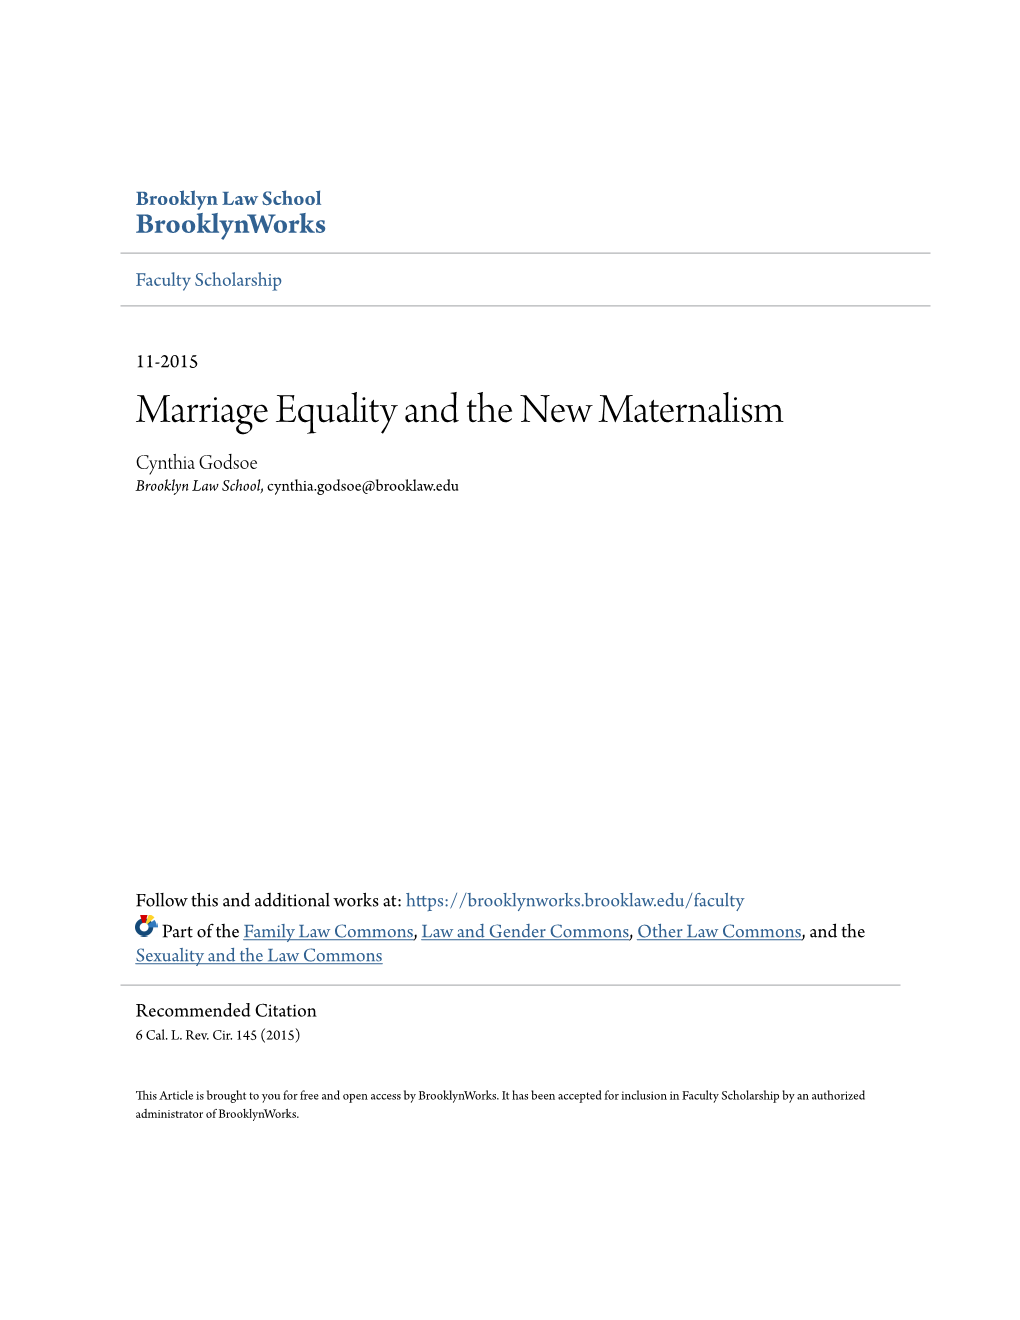 Marriage Equality and the New Maternalism Cynthia Godsoe Brooklyn Law School, Cynthia.Godsoe@Brooklaw.Edu